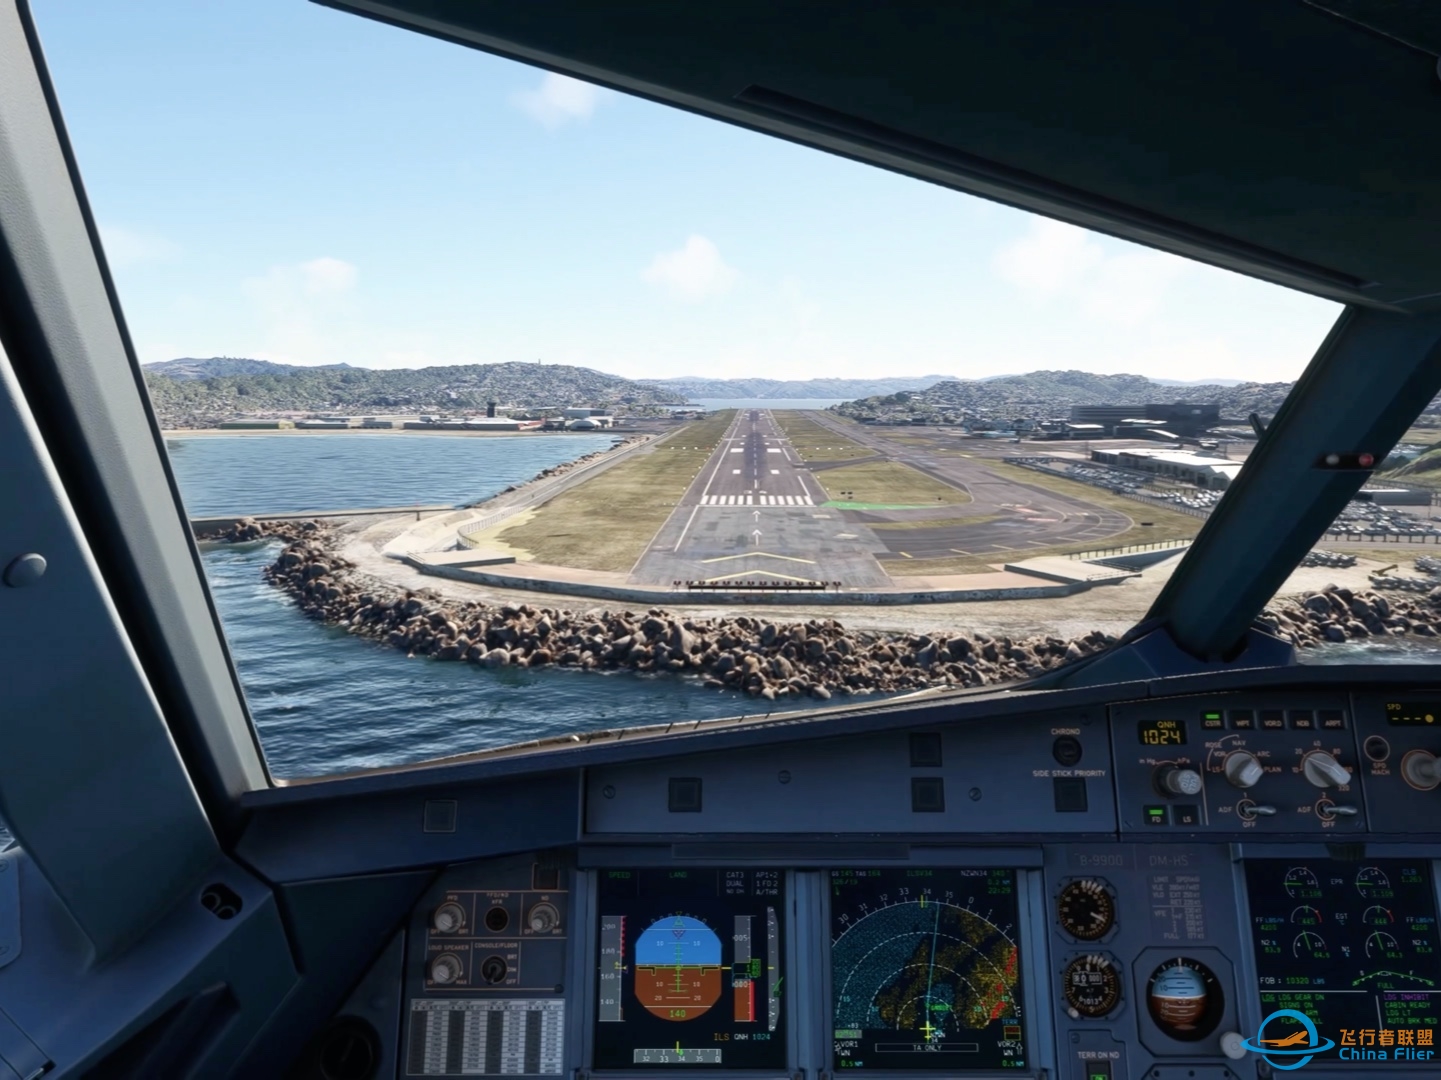 降落微软飞行模拟2020最喜欢的机场新西兰惠灵顿机场-6619 